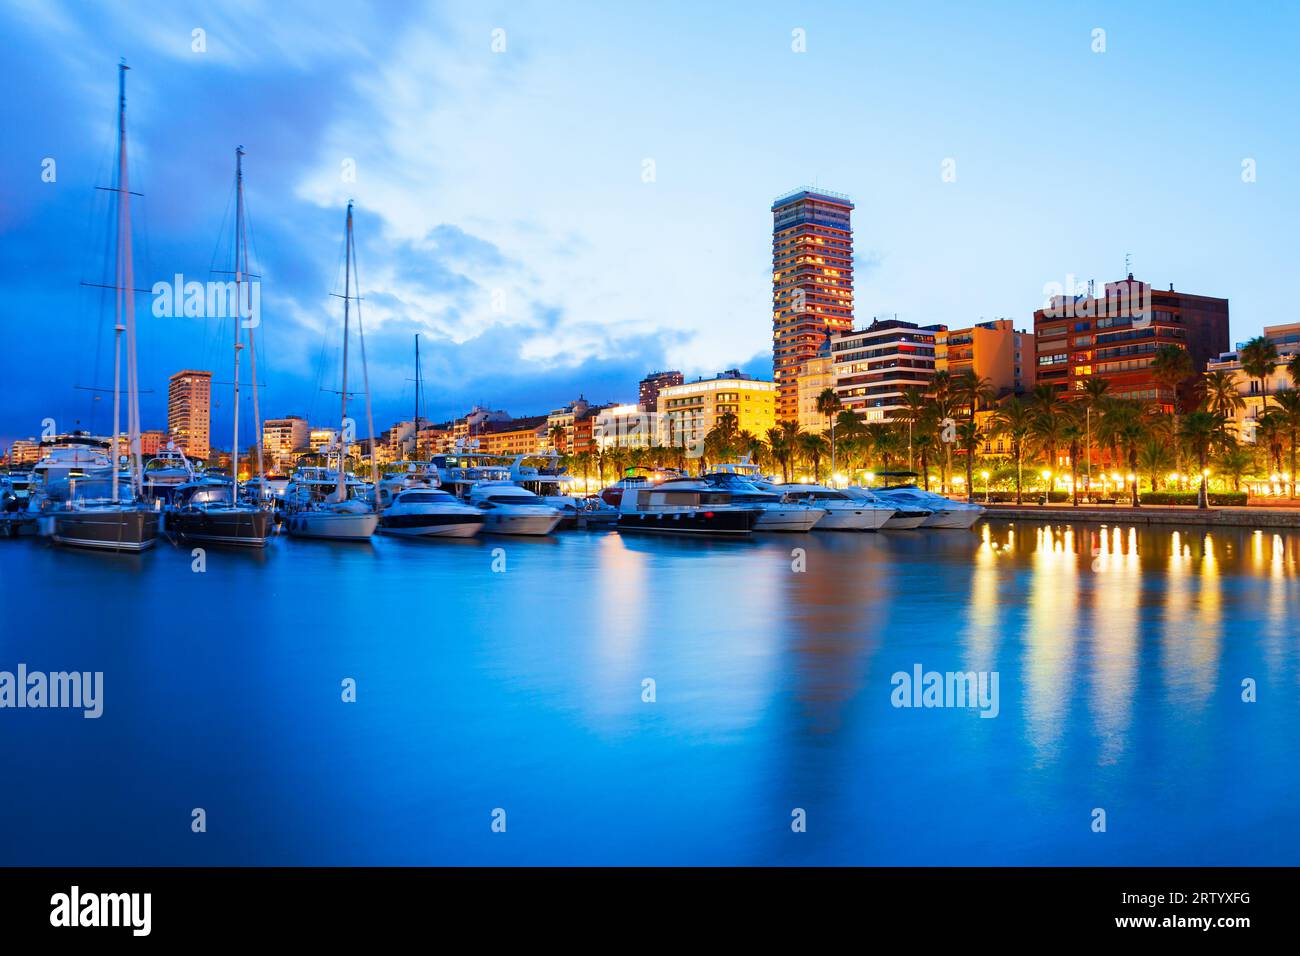 Port de plaisance du Port d'Alicante avec bateaux et yachts. Alicante est une ville de la région de Valence, en Espagne. Banque D'Images